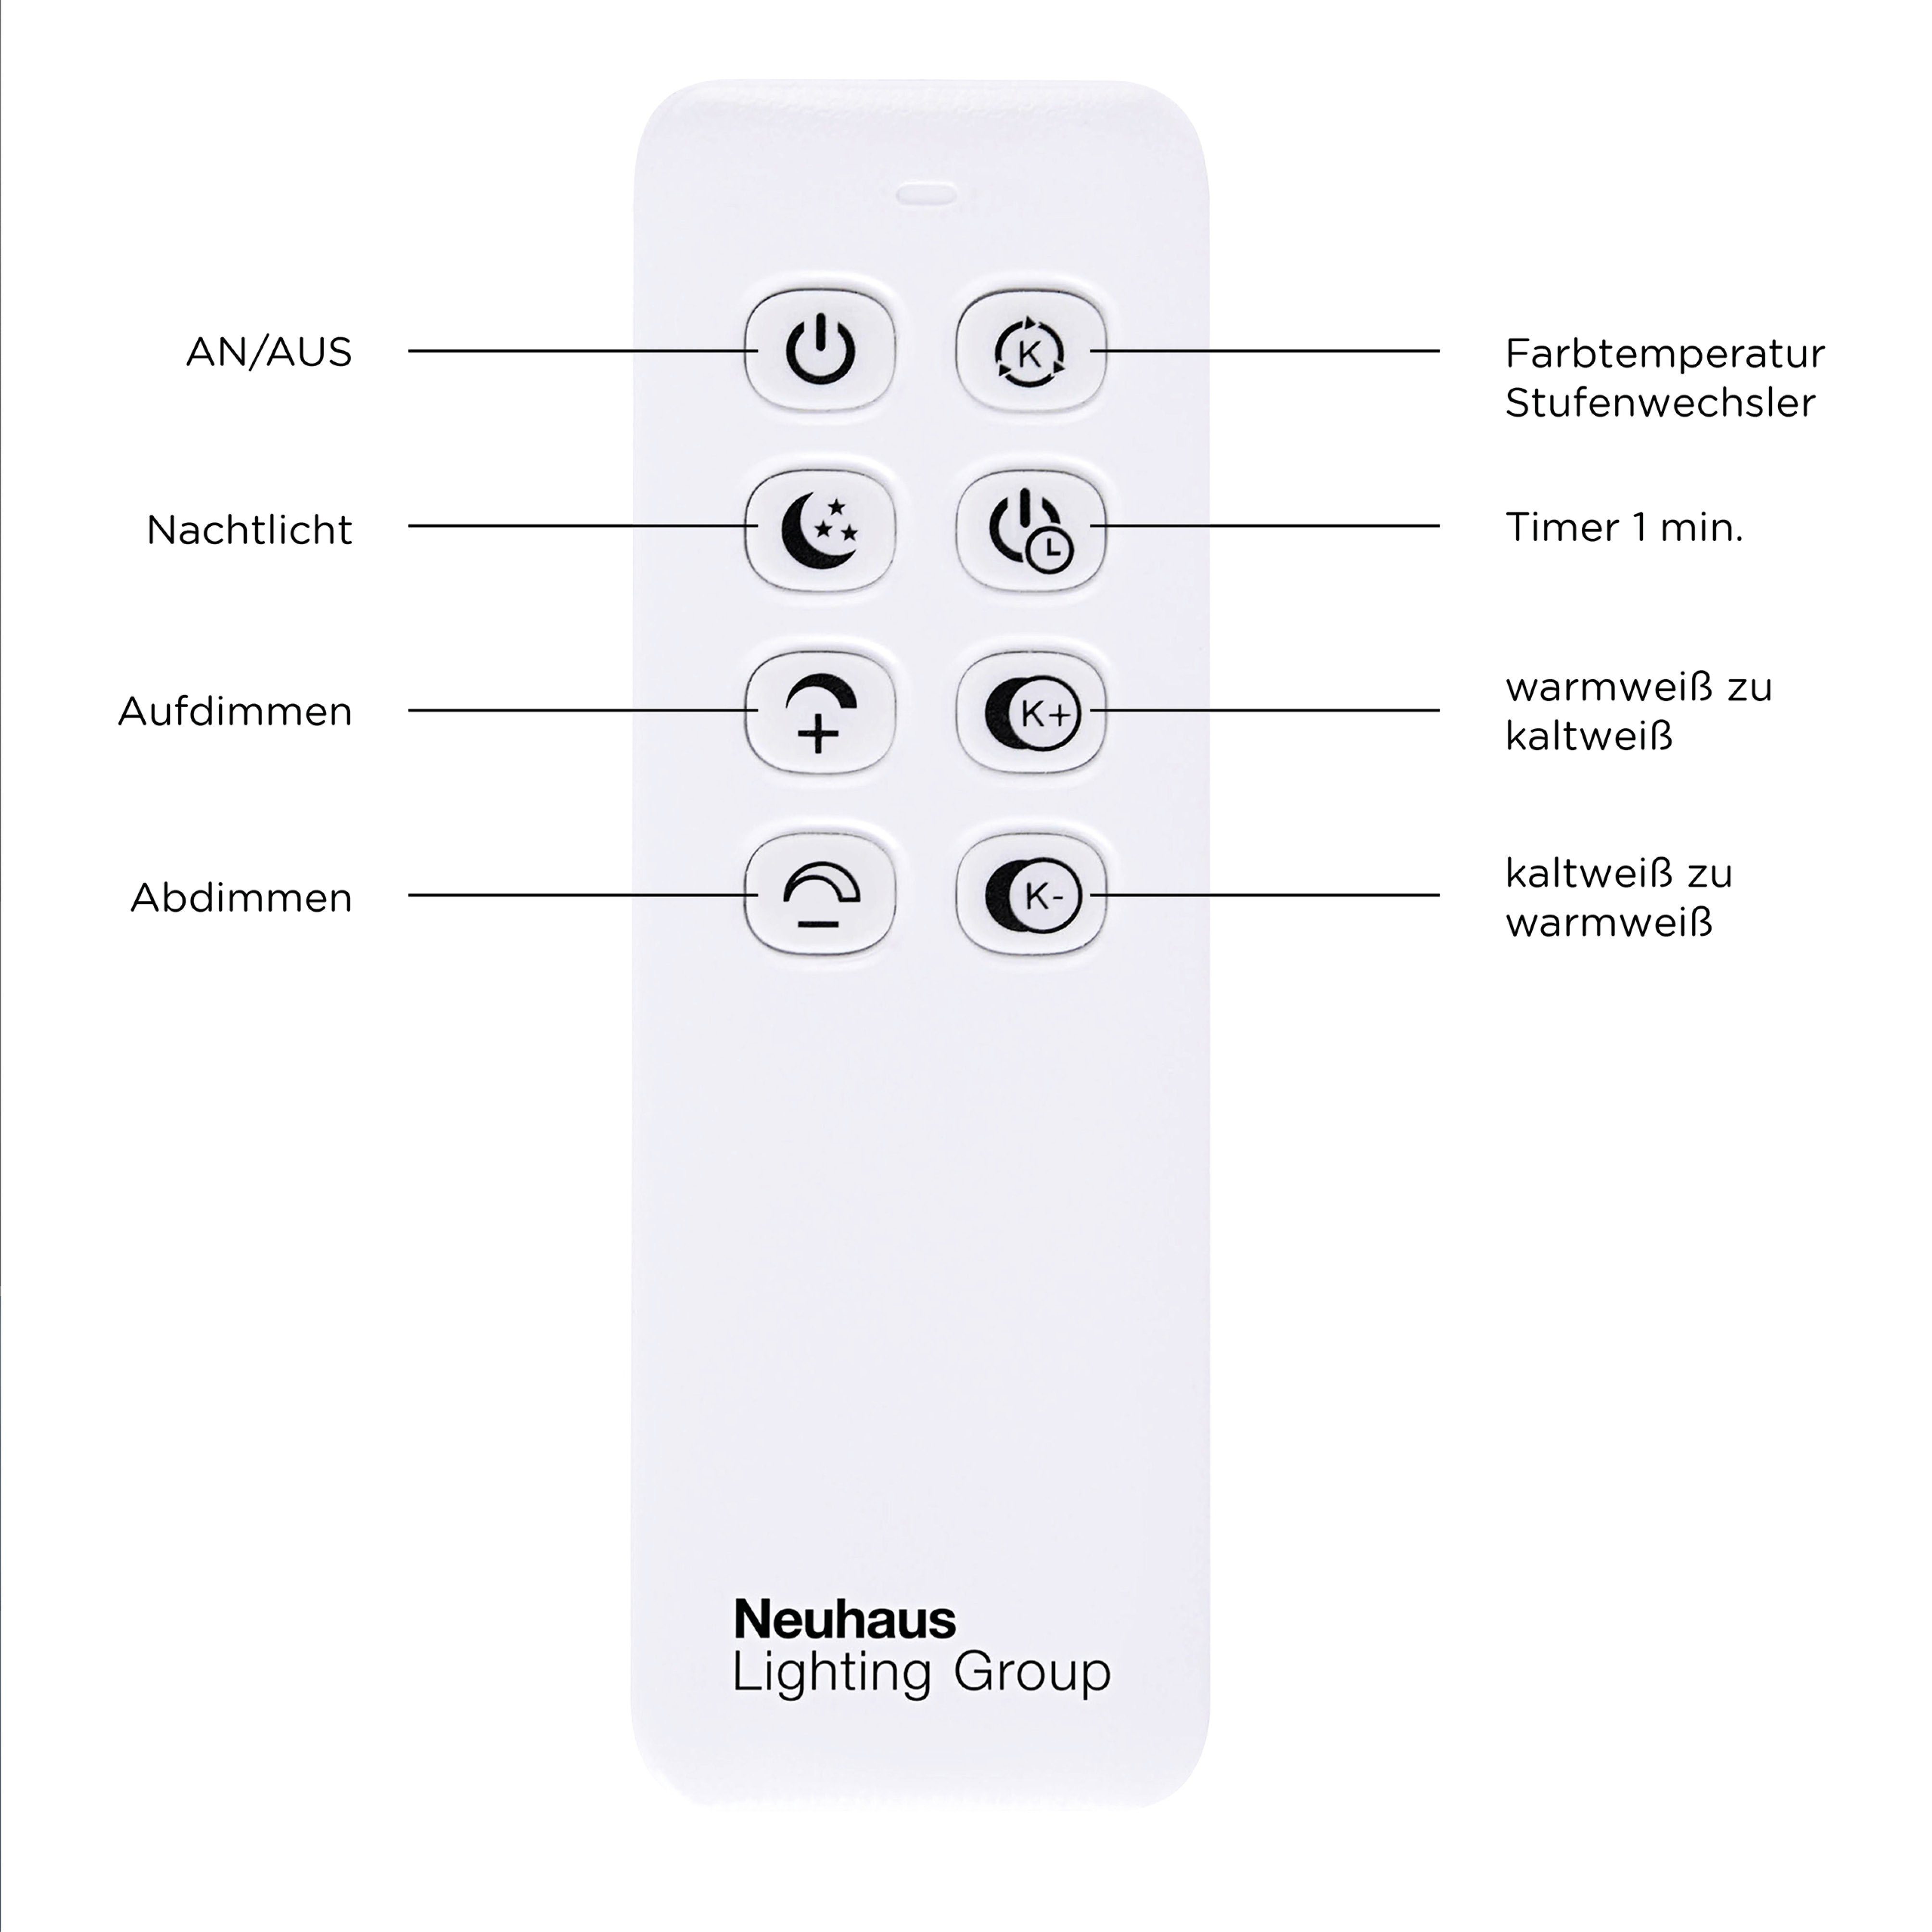 Leuchten Direkt LED dimmbar Memory, kaltweiß, vom IVEN, LED inkl., warmweiß Trennung Infrarot Fernbedienung, nach Deckenleuchte Fernbedienung fest über Netz, integriert, Dimmfunktion, 